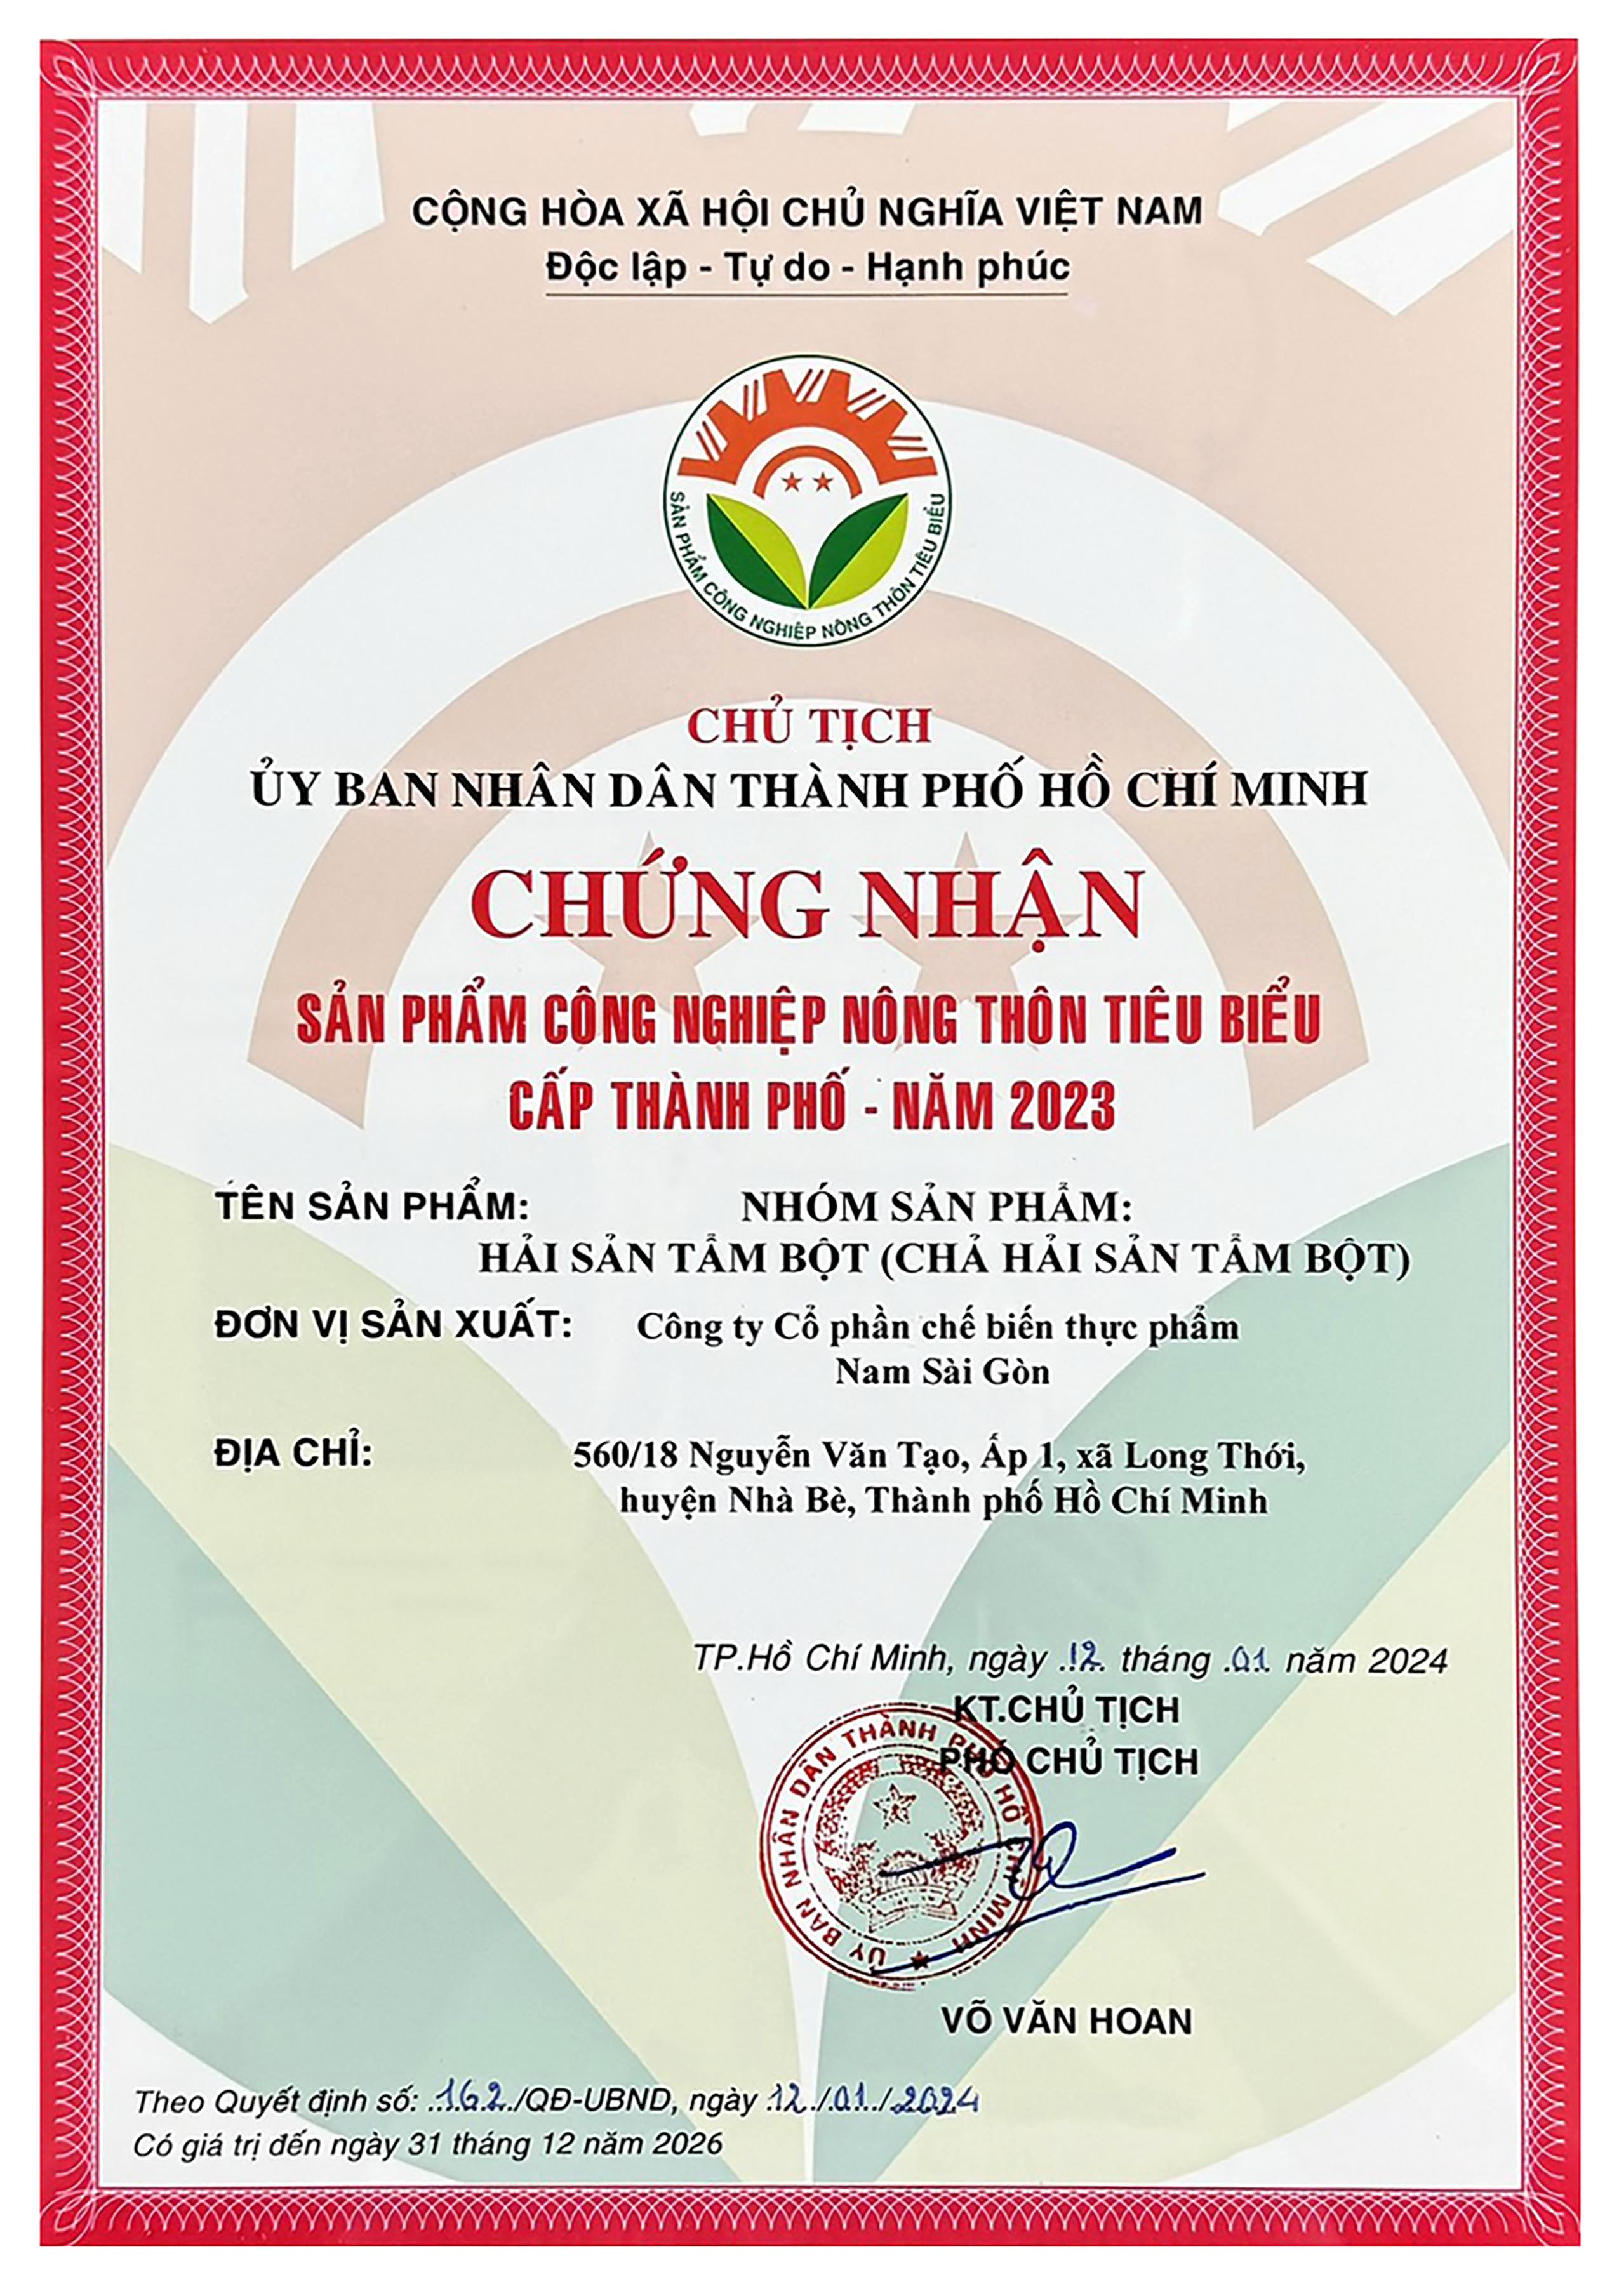 Nhóm sản phẩm tẩm bột Nam Sài Gòn Food đạt chứng nhận SP CNNT tiêu biểu cấp Thành phố